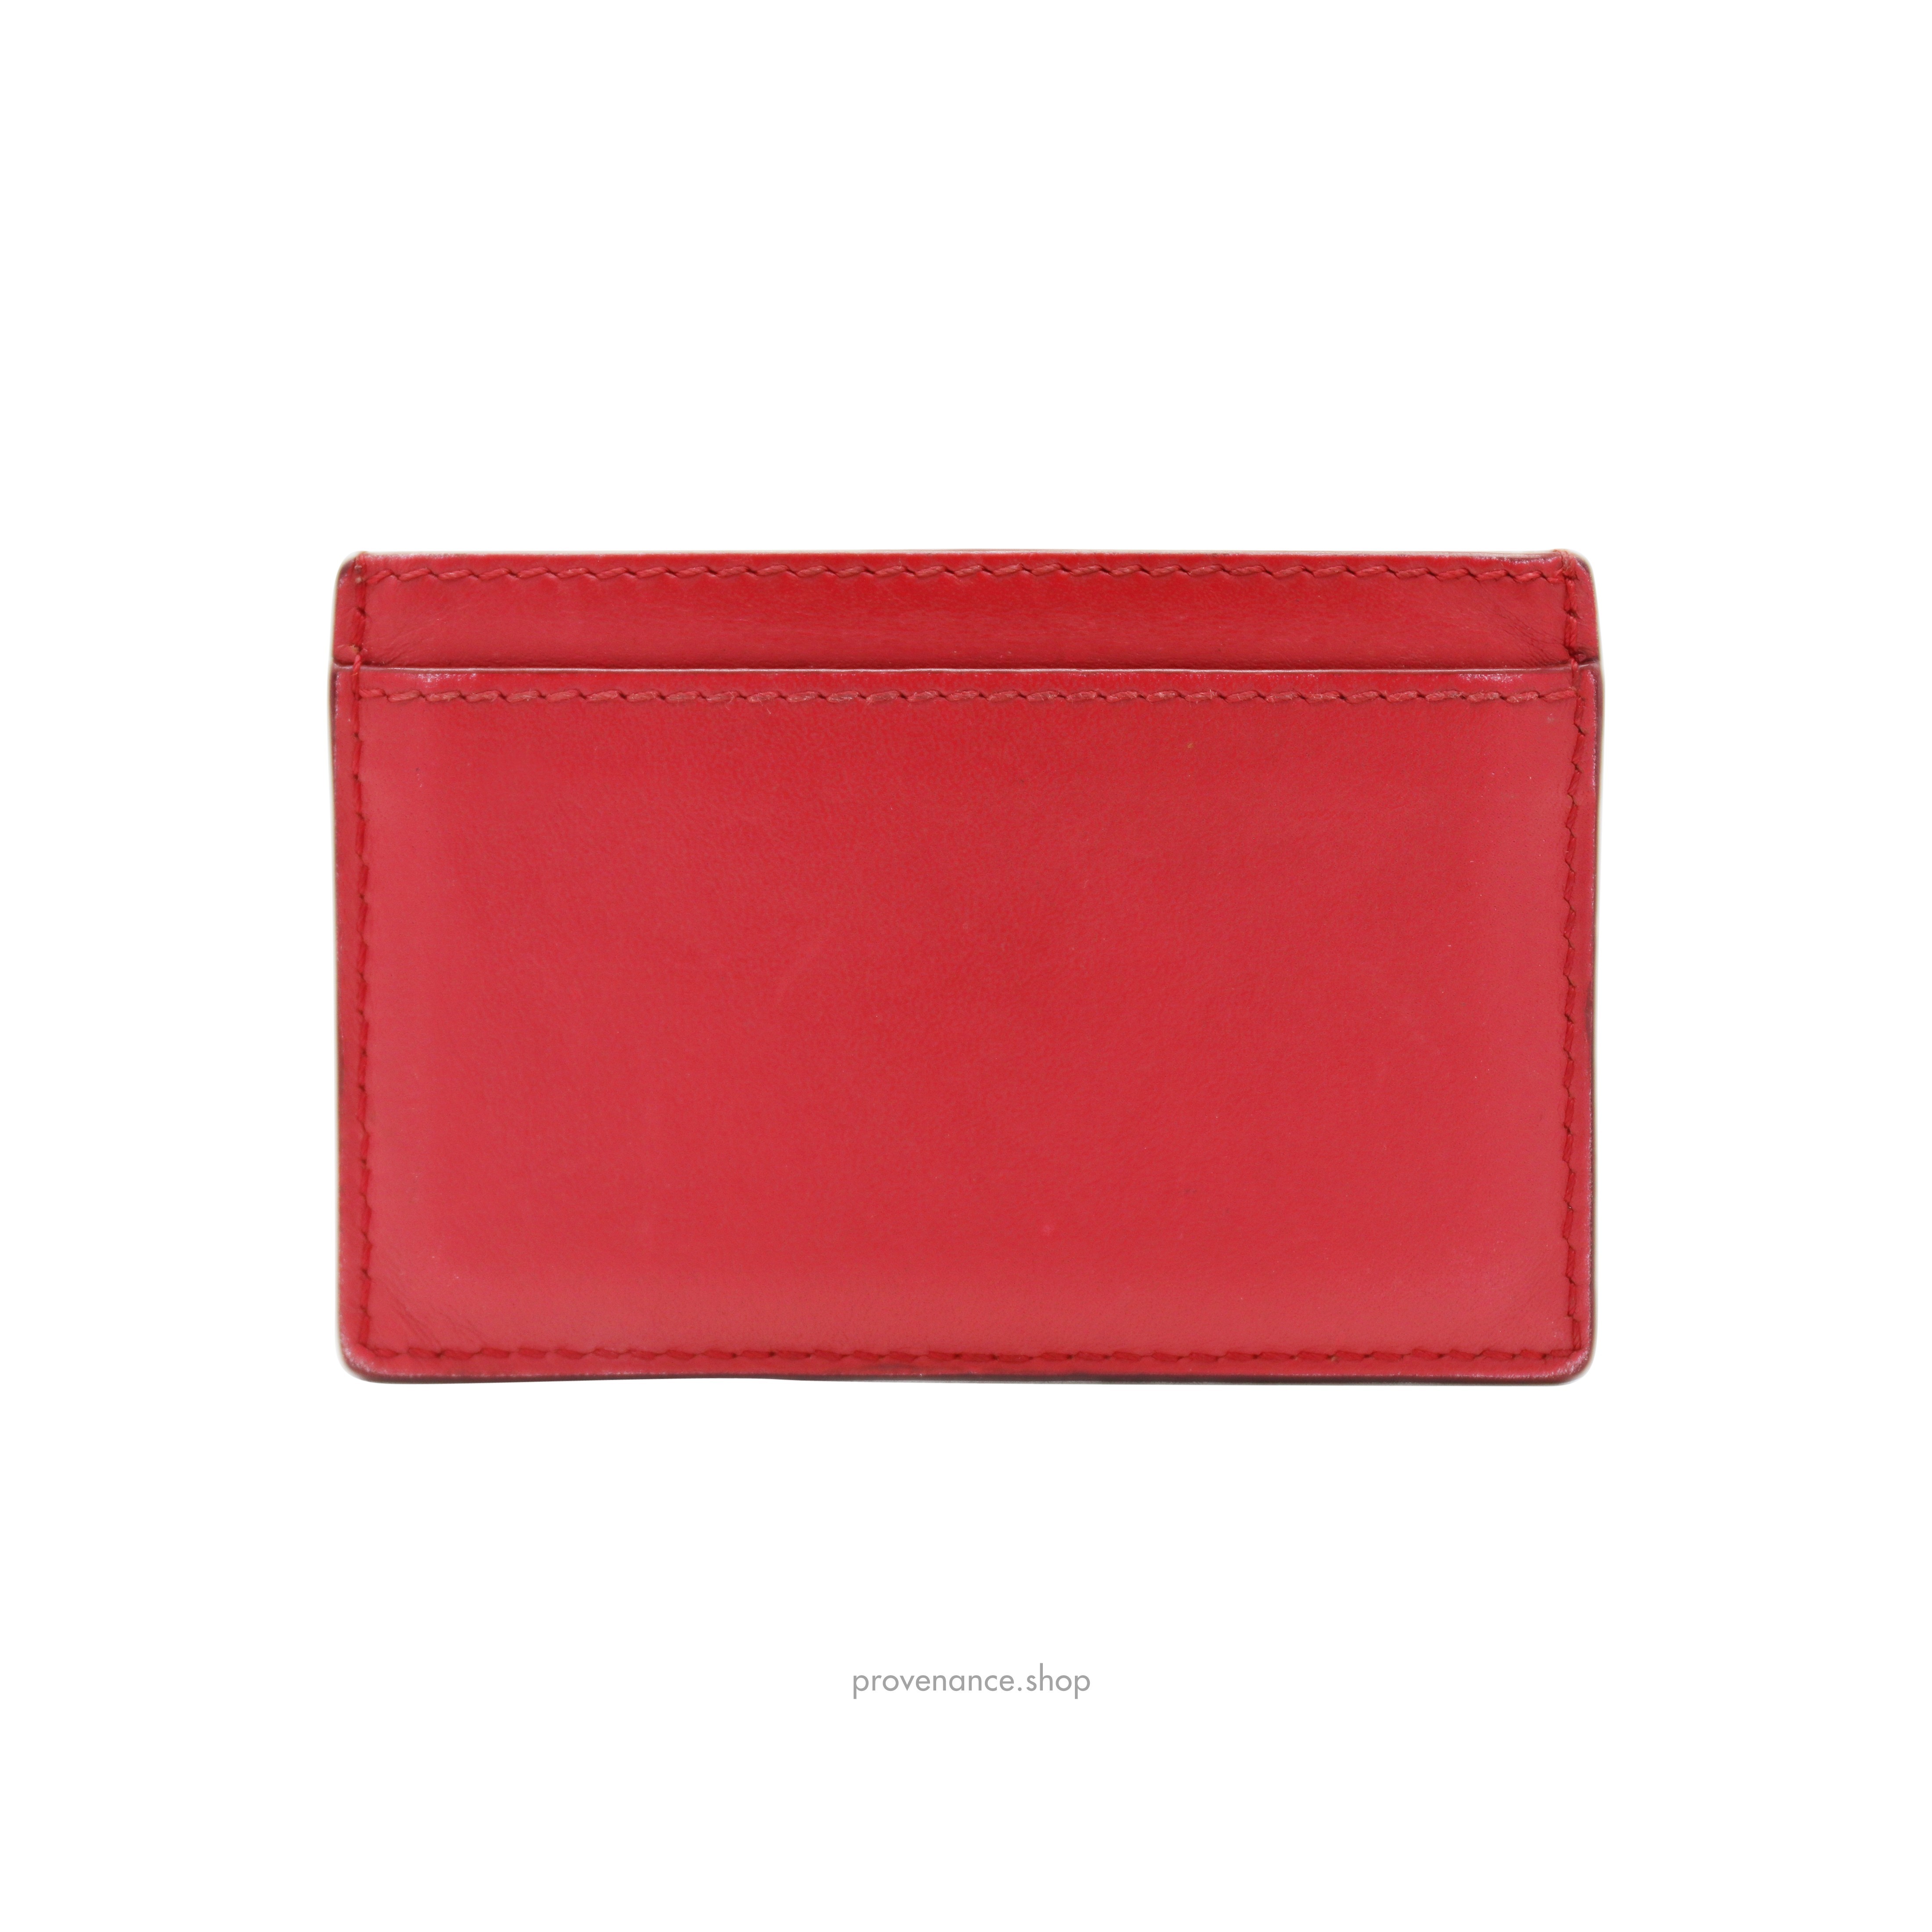 Celine Card Holder Wallet - Red Leather - 3